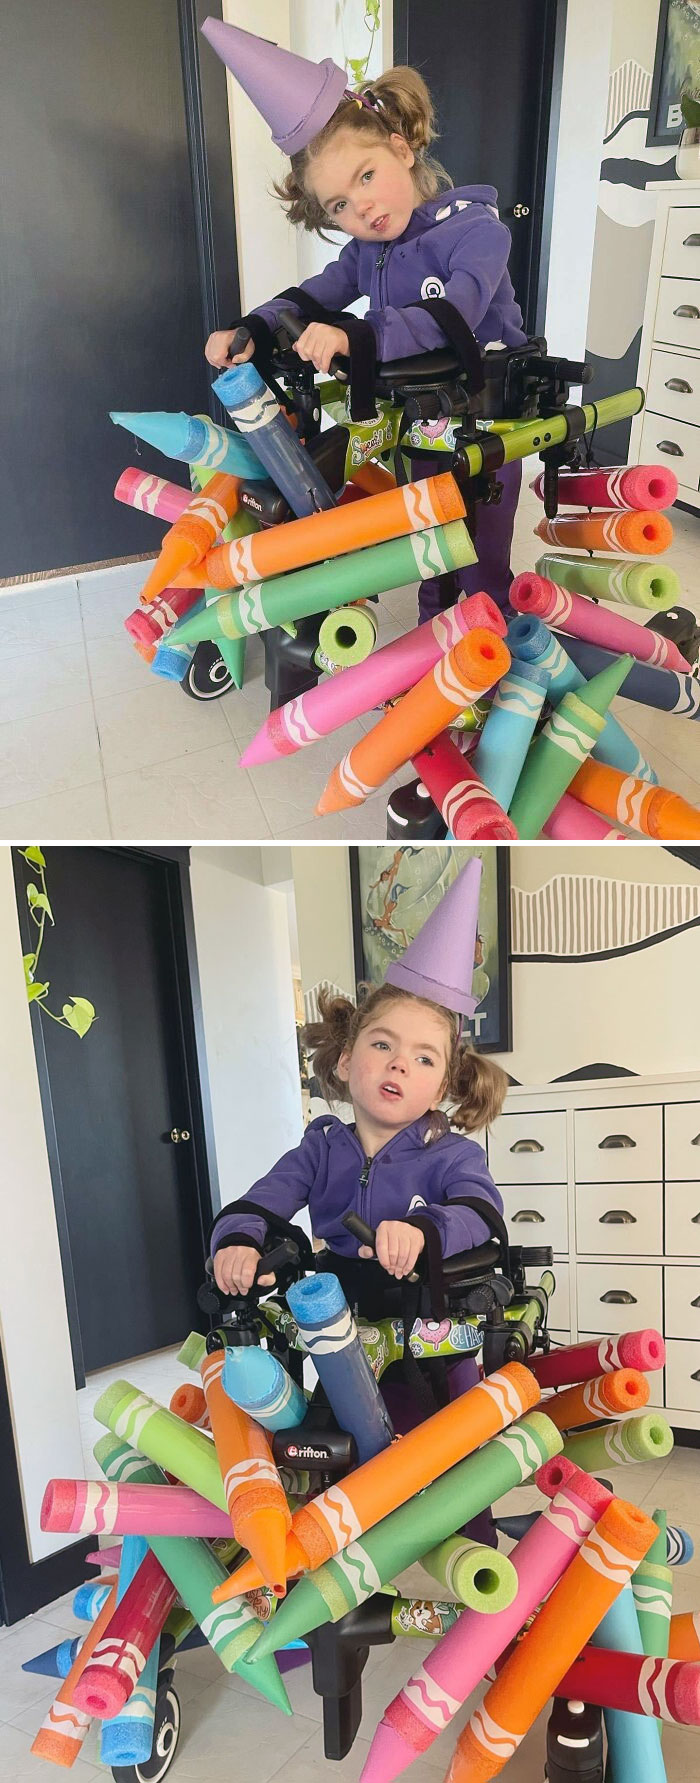 Mon enfant de 5 ans s’est déguisé en “tas de crayons” pour Halloween. Ils sont faits de nouilles de piscine, de ruban adhésif de hockey et de papier de construction, et ils sont attachés ensemble pour être accrochés à sa marchette.